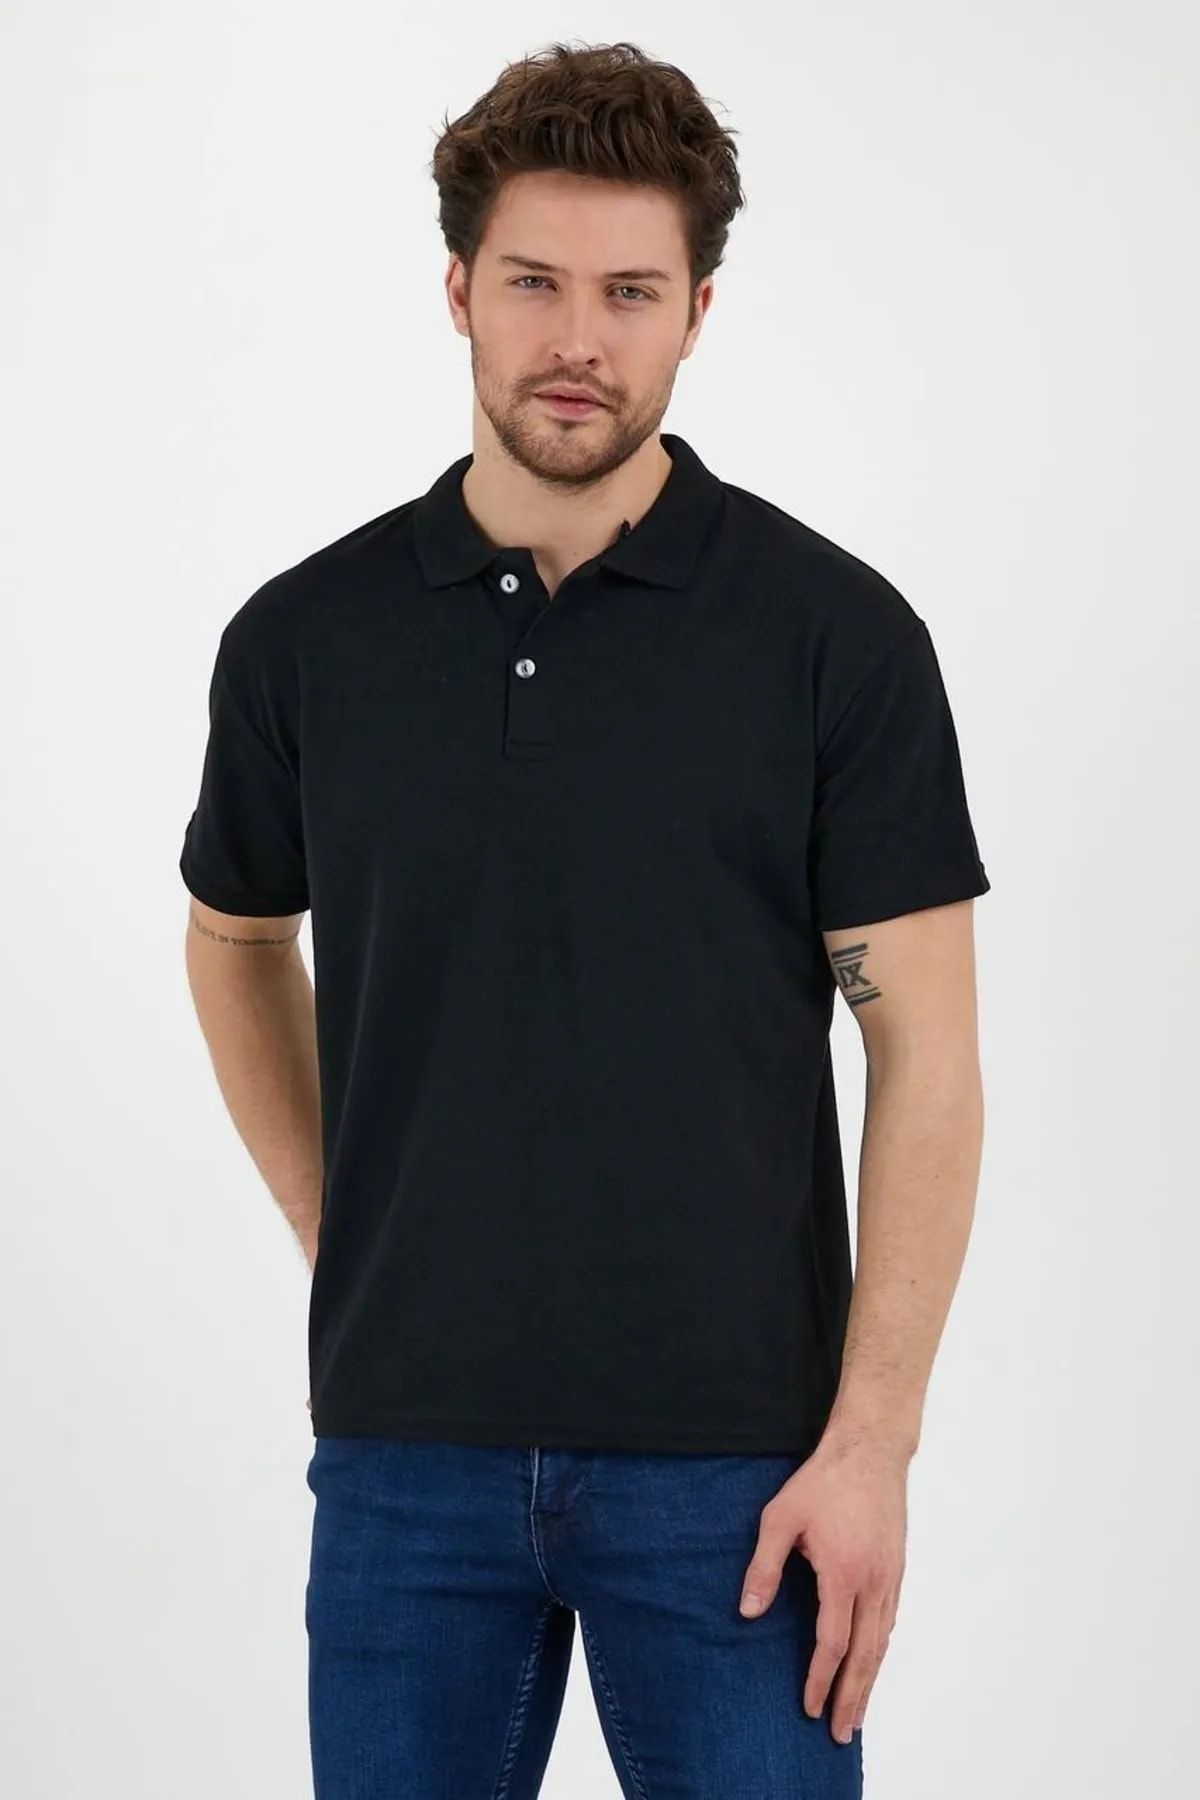 EKZMODA Erkek Siyah Slim Fit Polo Yaka Tişört - Siyah Tisort - Yakali Erkek T-shirt